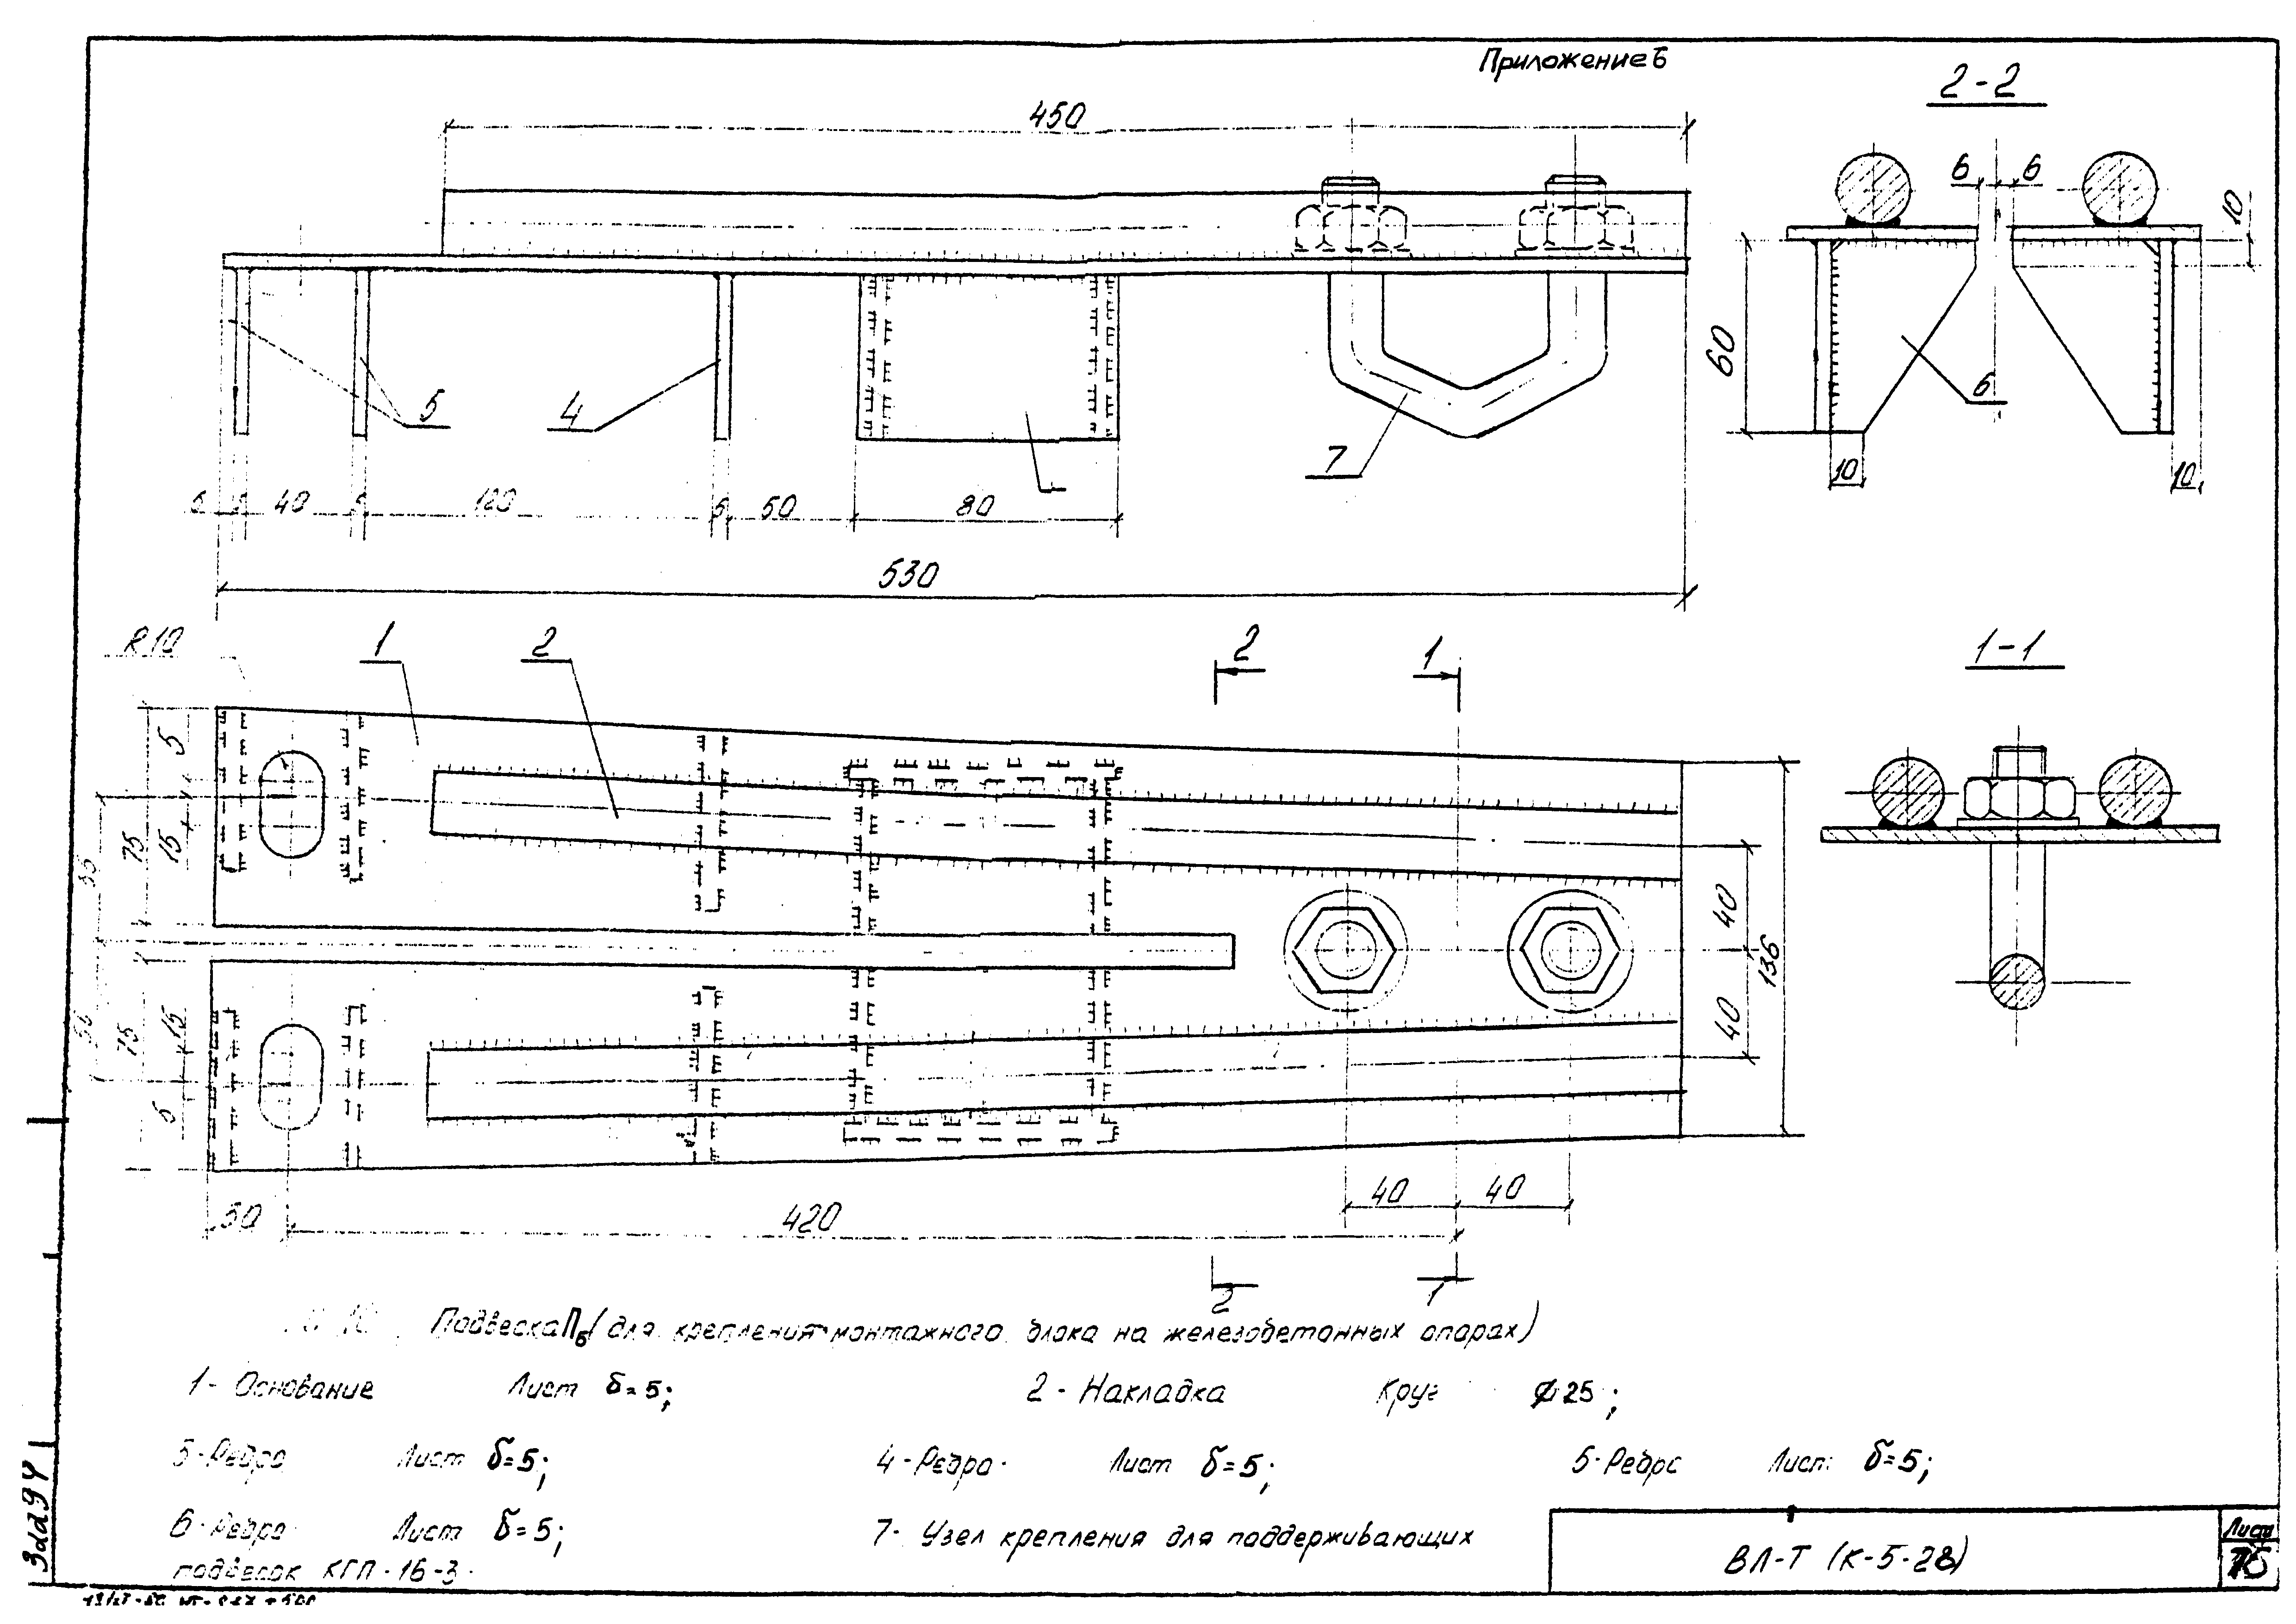 Технологическая карта К-5-28-1